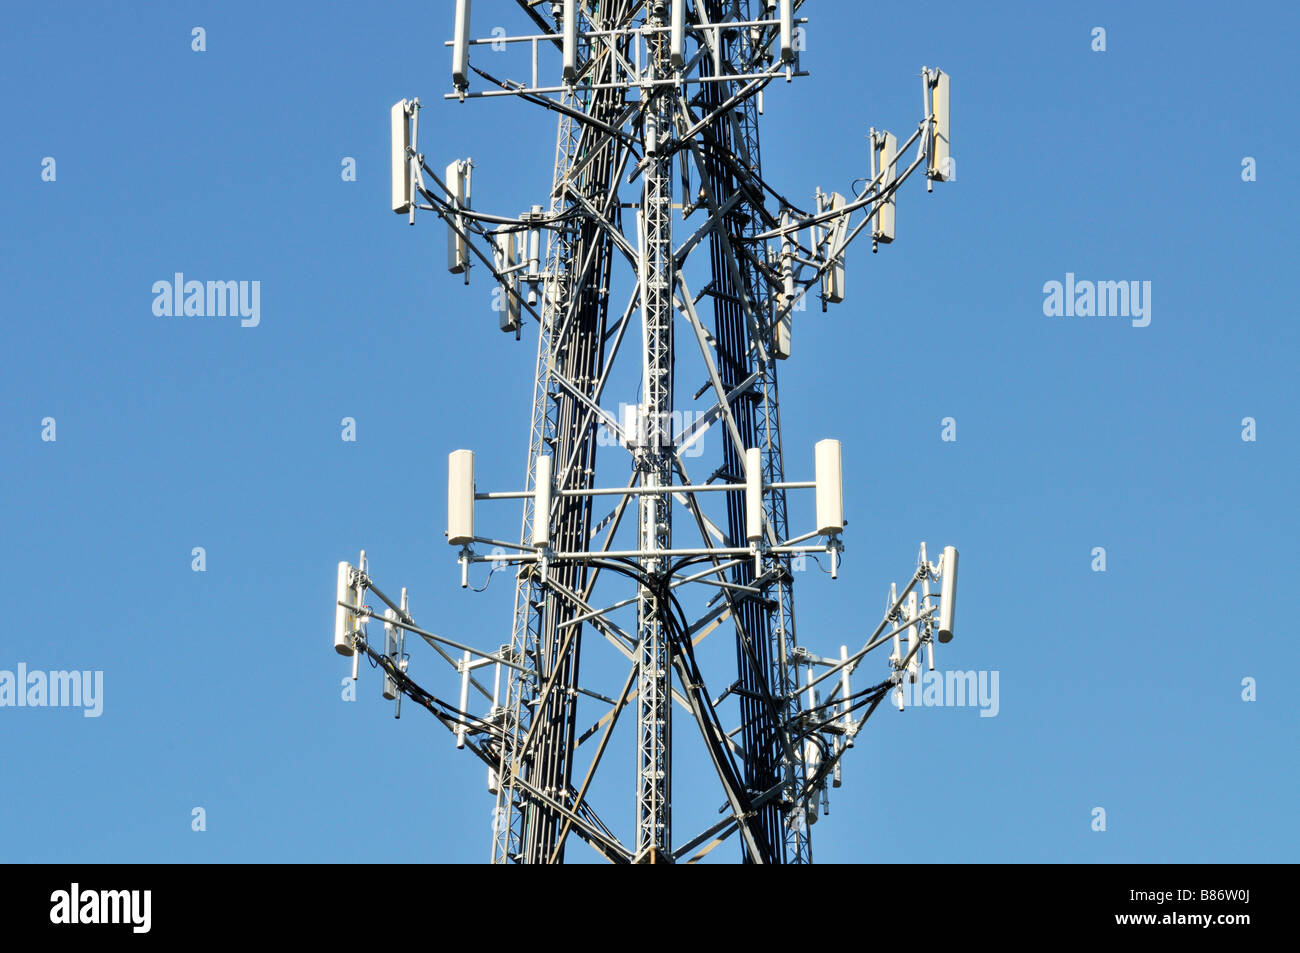 Antenas de telefonía celular en la torre de telefonía móvil contra el cielo azul USA Foto de stock